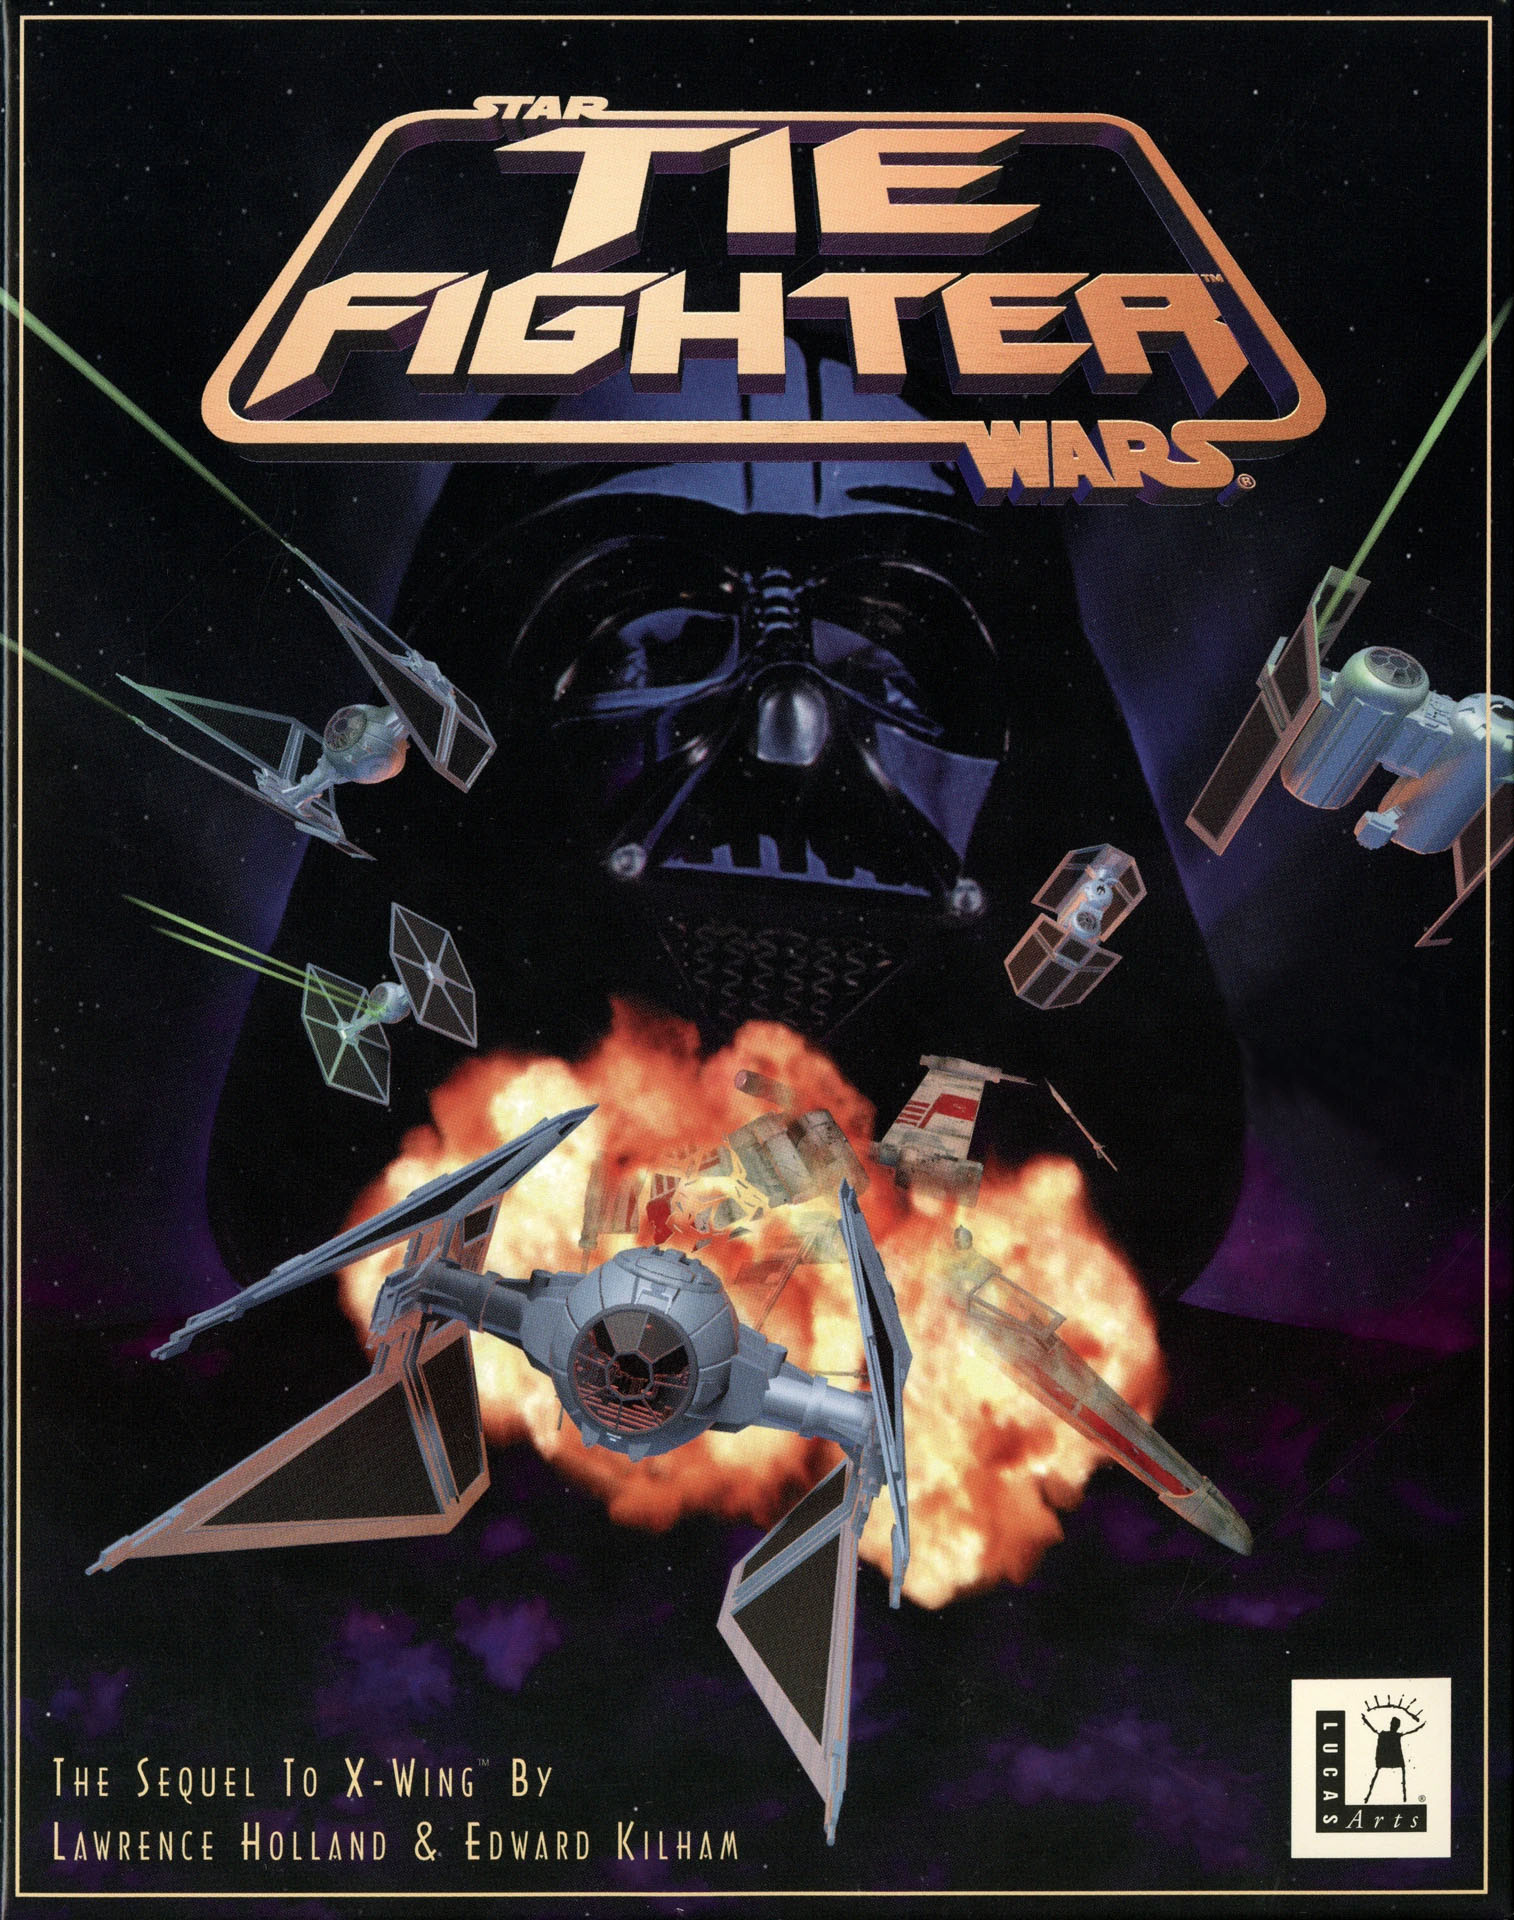 Capa do jogo Star Wars: Tie Figther, lançado pela Lucas Arts em 1994.